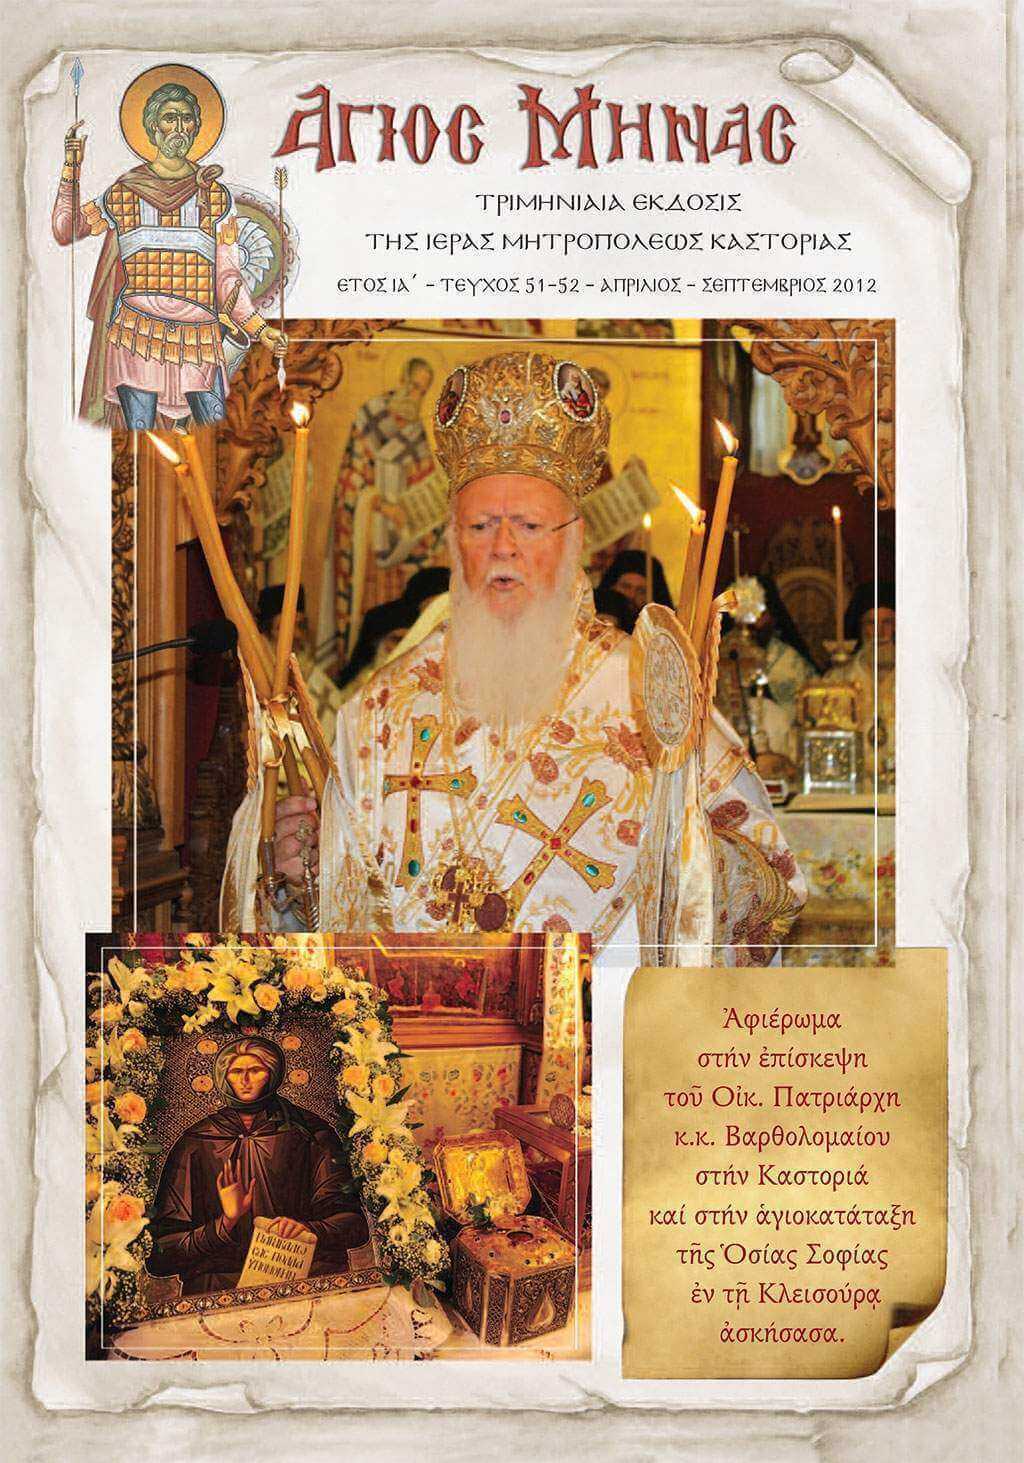 Κυκλοφόρησε το νέο τεύχος περιοδικού της Ιεράς Μητροπόλεώς μας “Ο Άγιος Μηνάς”